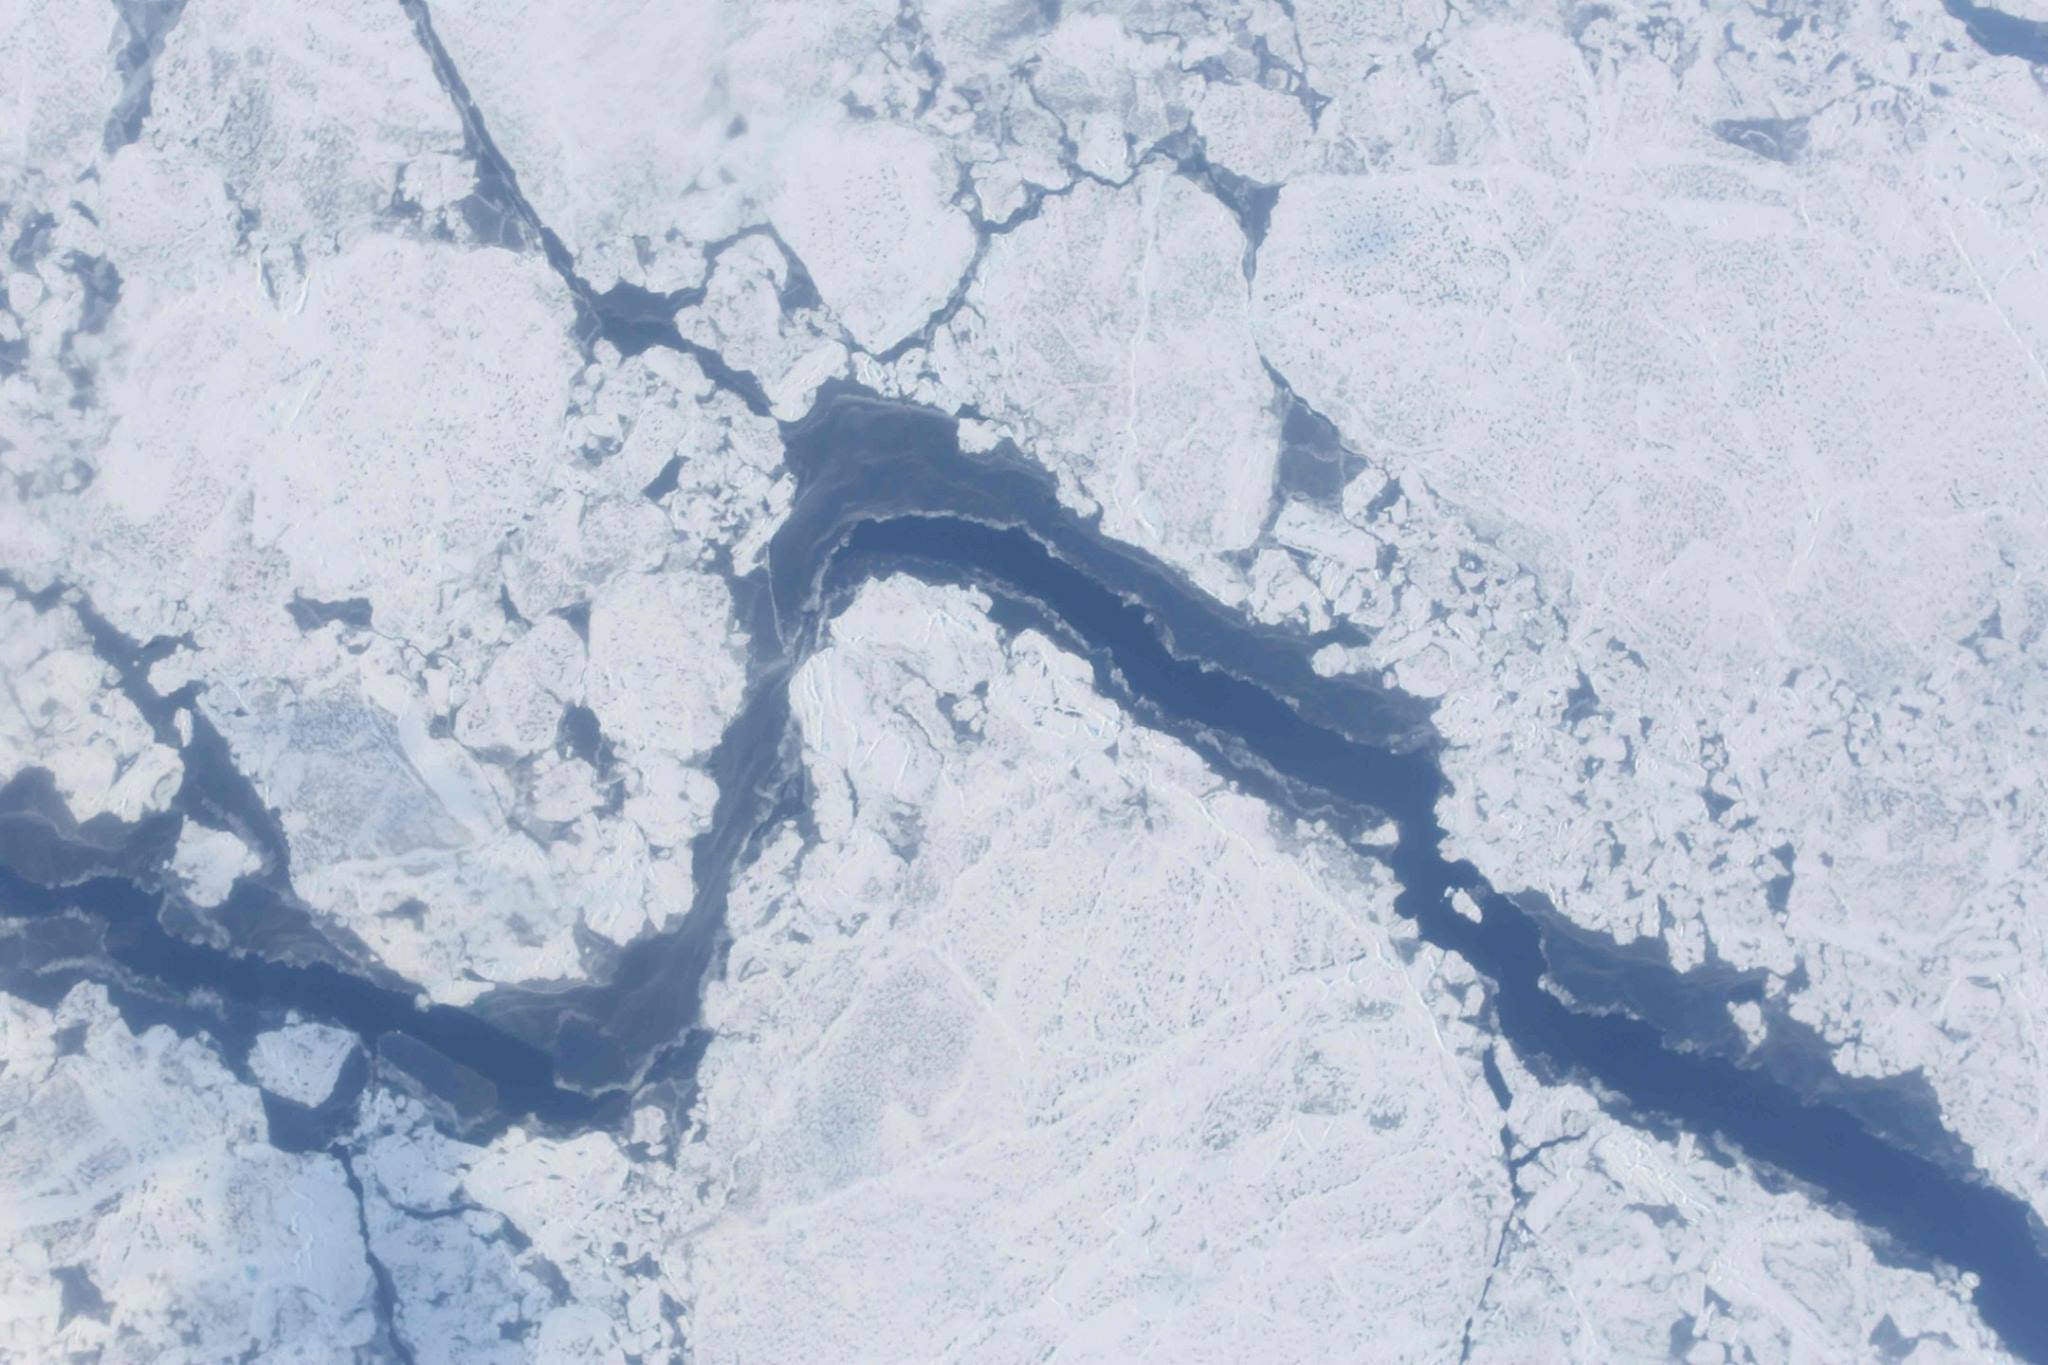 सन् २०४४ सम्म आर्कटिक महासागरका सबै हिँउ पग्लिनेछ : अध्ययन